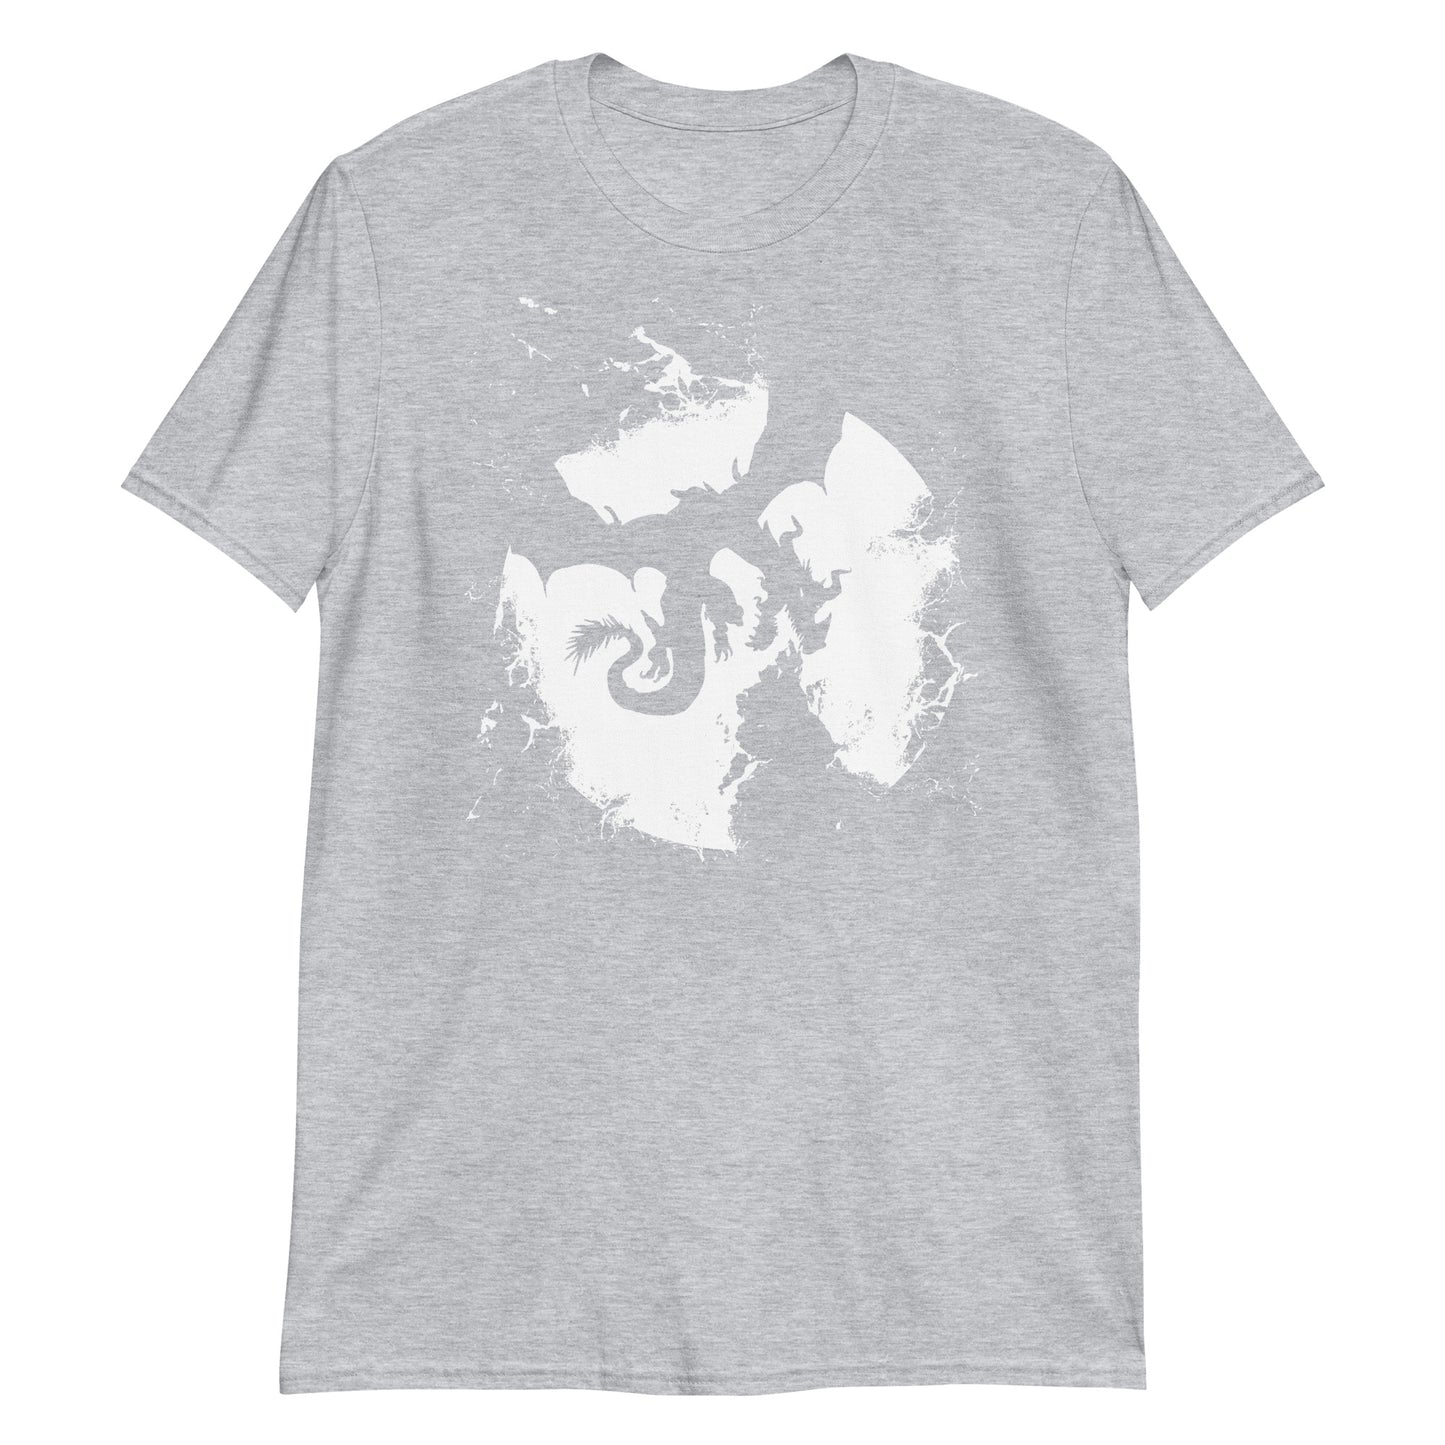 Dragon Fire T-Shirt (Unisex)